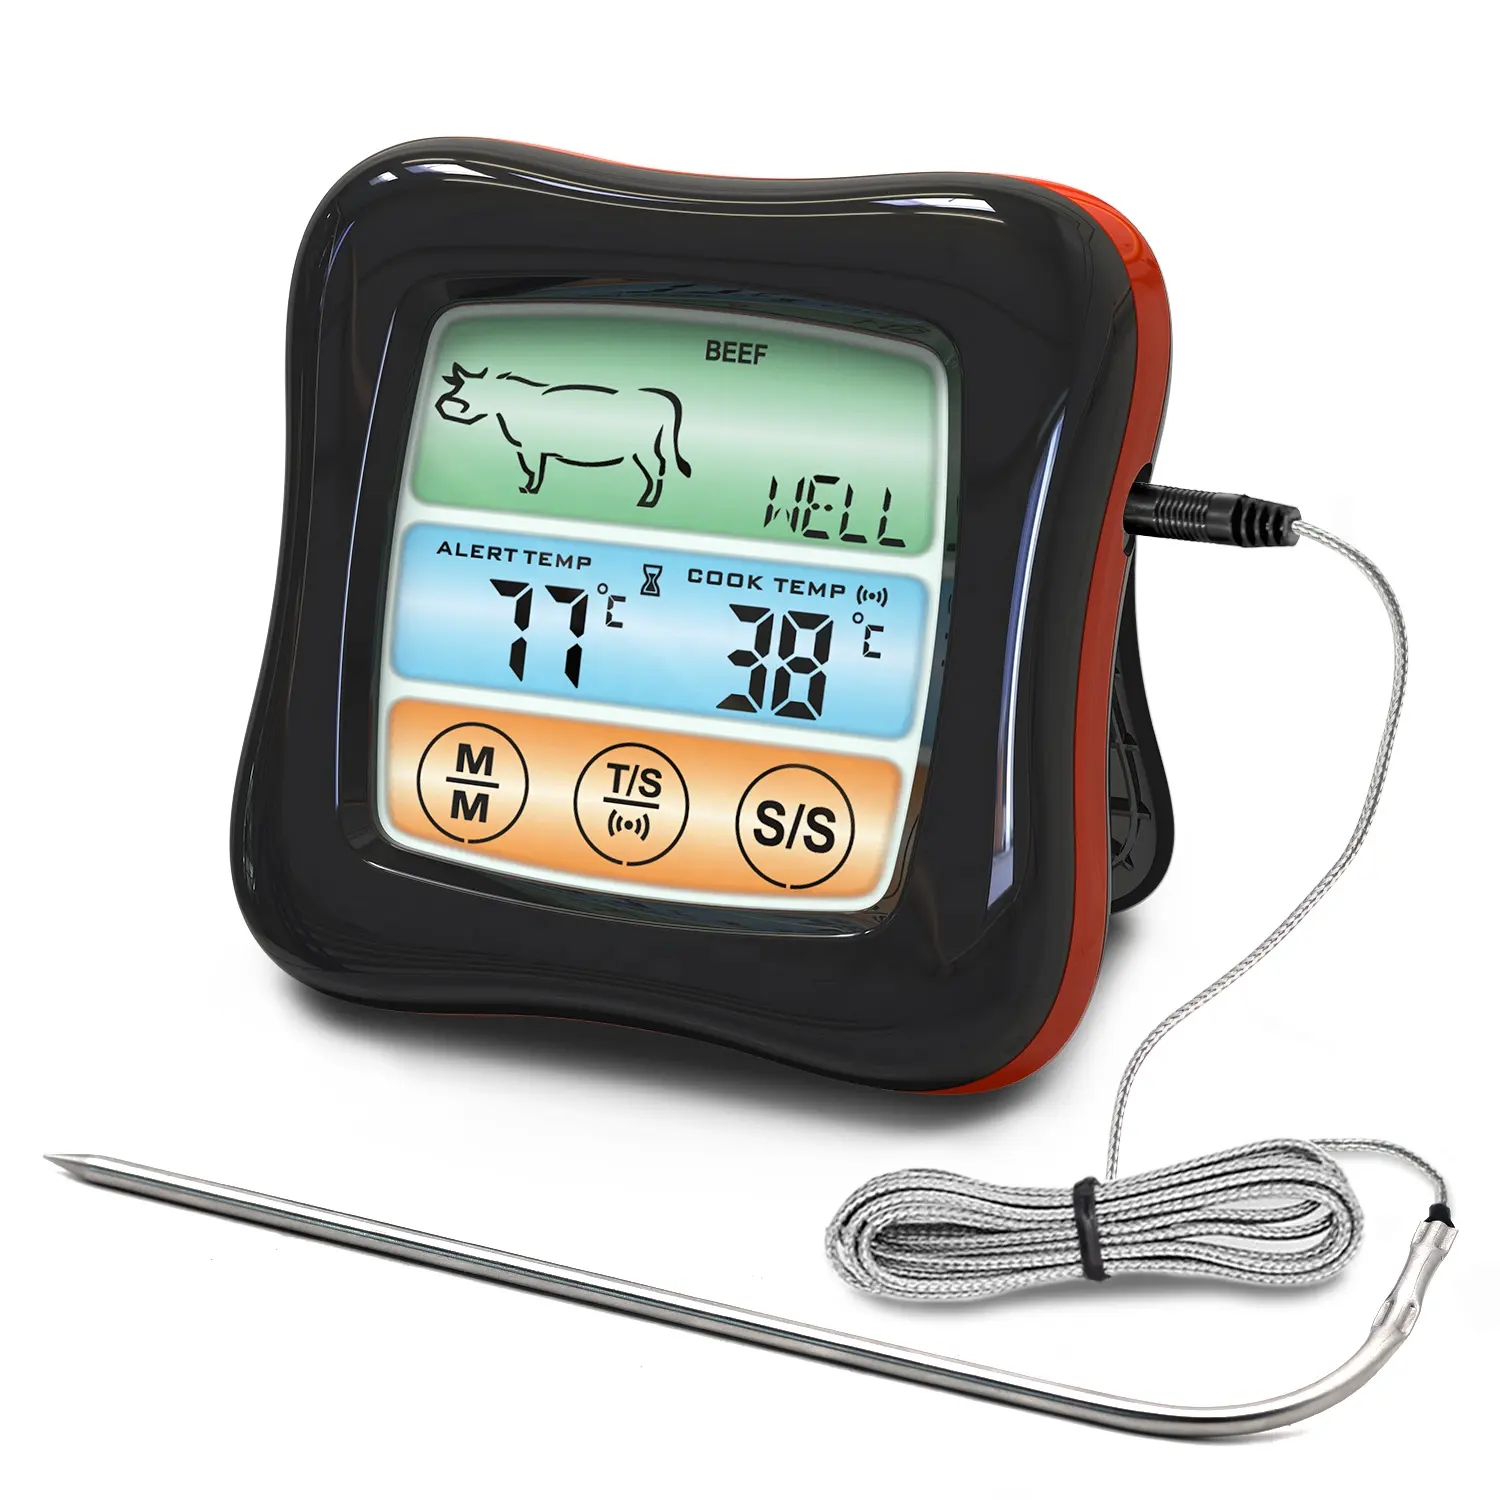 Termometer Daging Digital Baca Instan Layar Sentuh, Termometer Daging dan Permen Digital Baru 2021 dengan Layar Sentuh untuk Memasak Makanan BBQ Panggangan Dapur